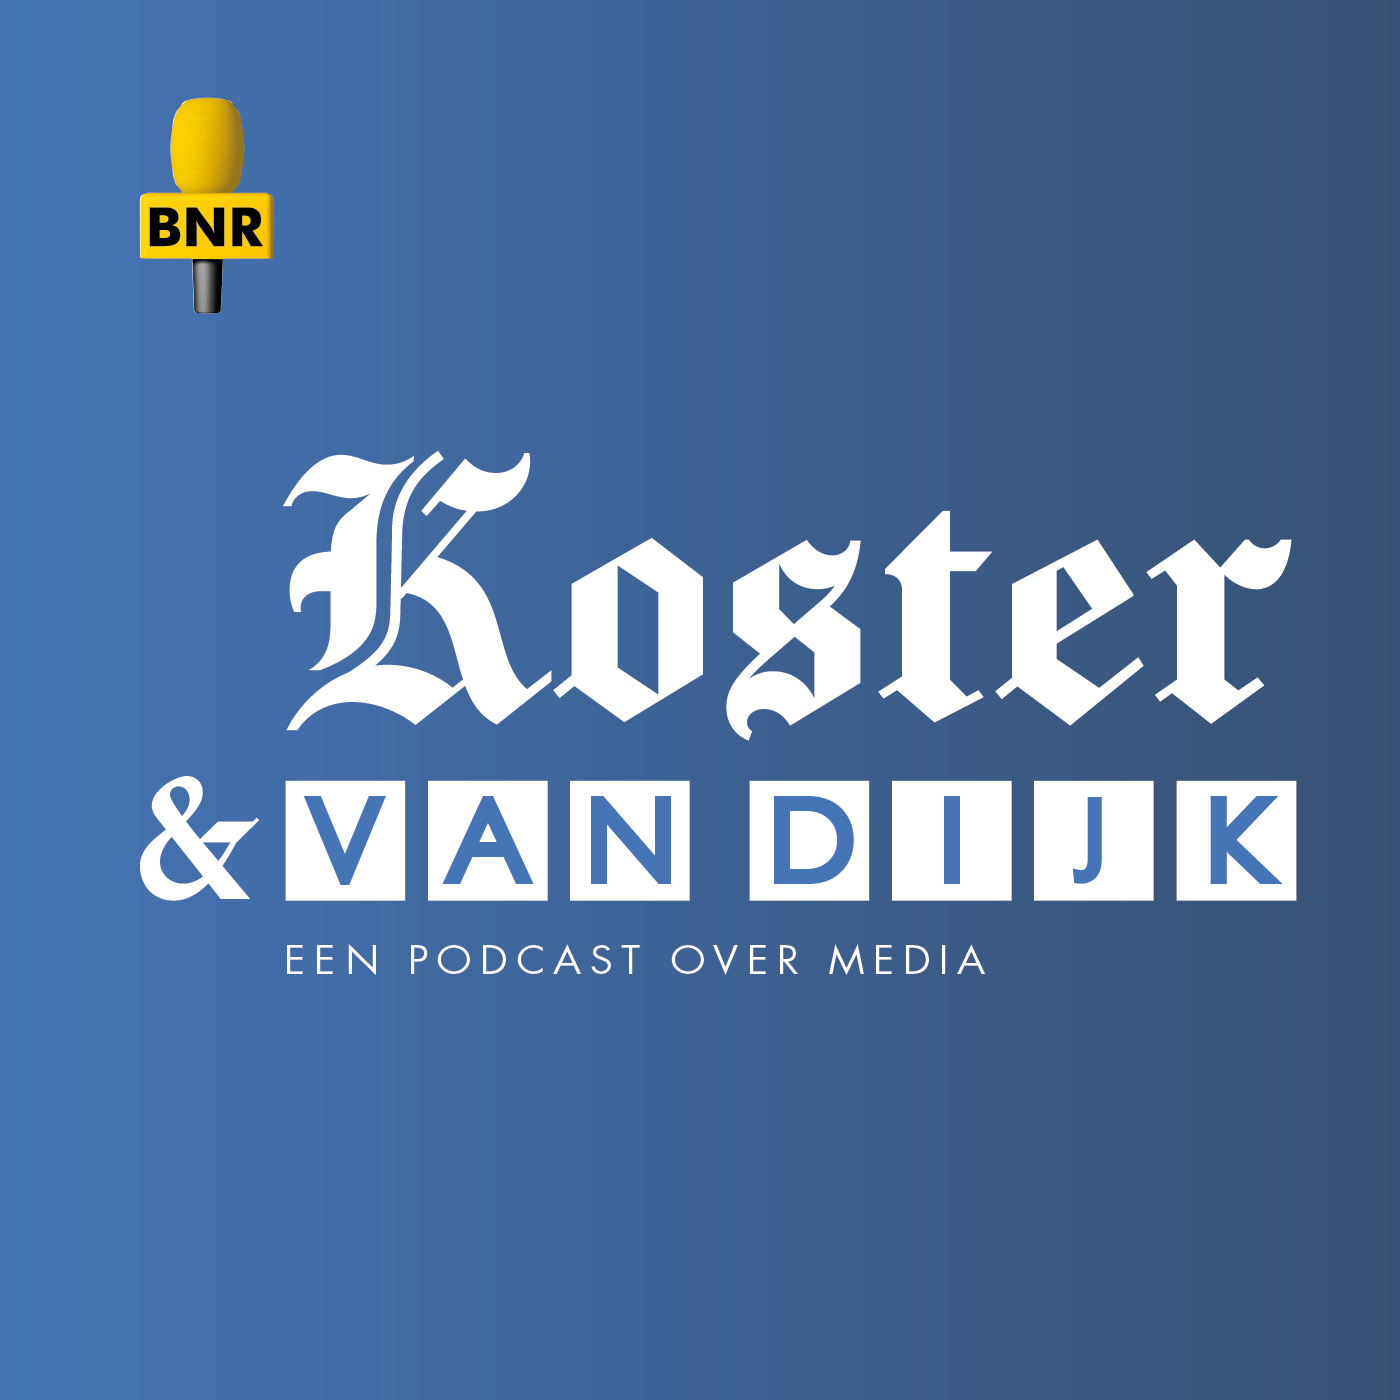 Koster & Van Dijk: De rookgordijnen van John de Mol